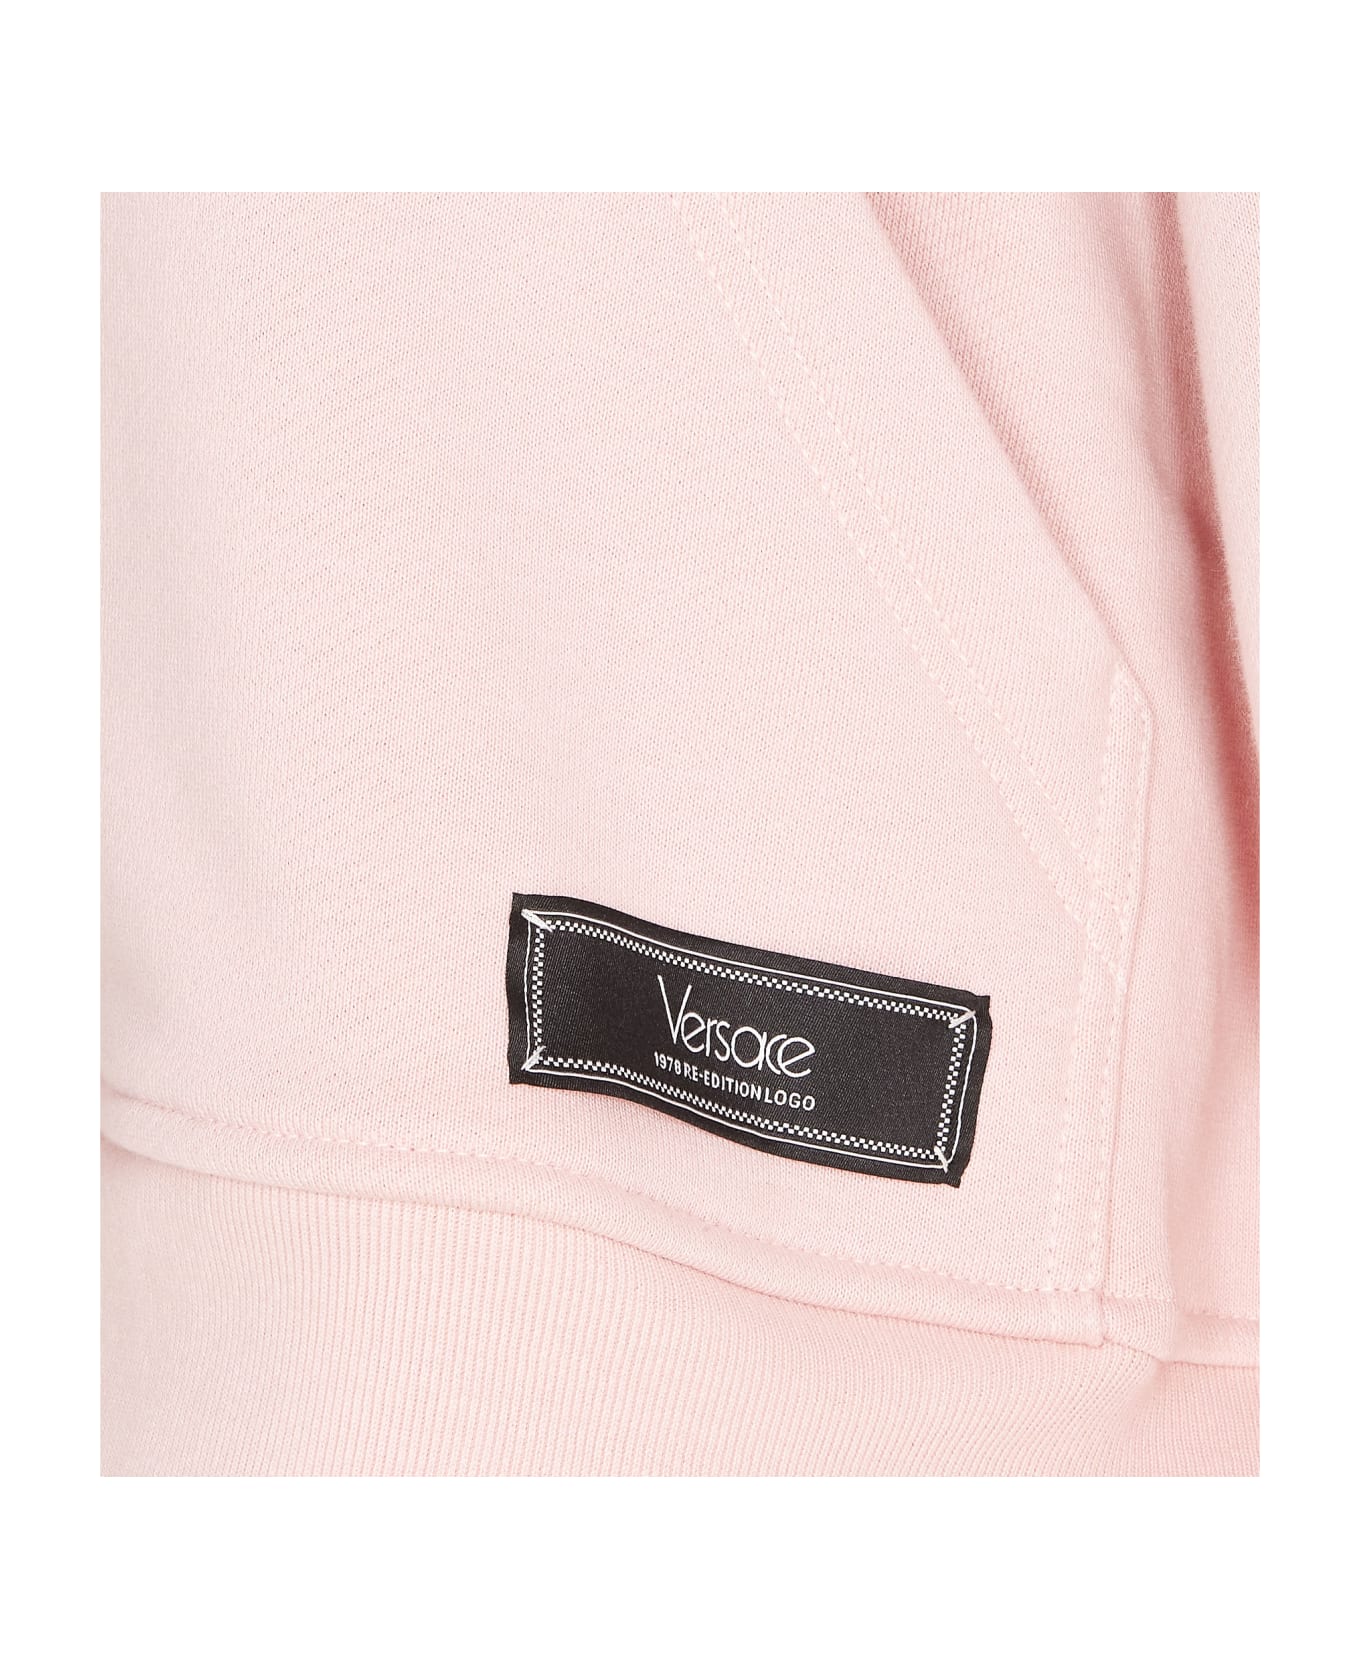 Versace Logo Hoodie - Pink